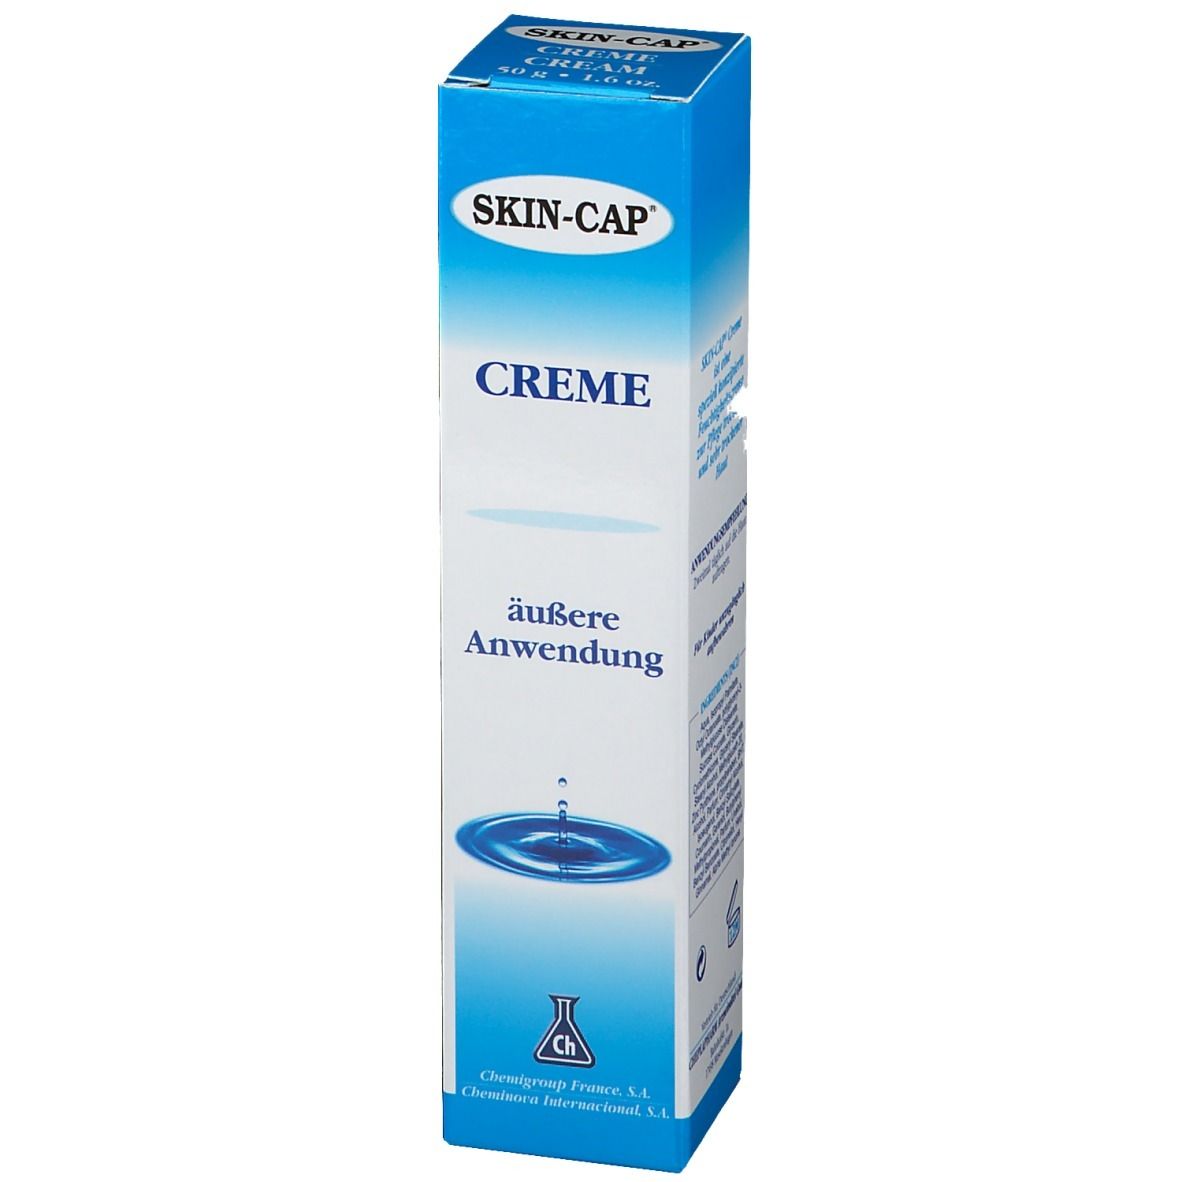 SKIN-CAP® Creme